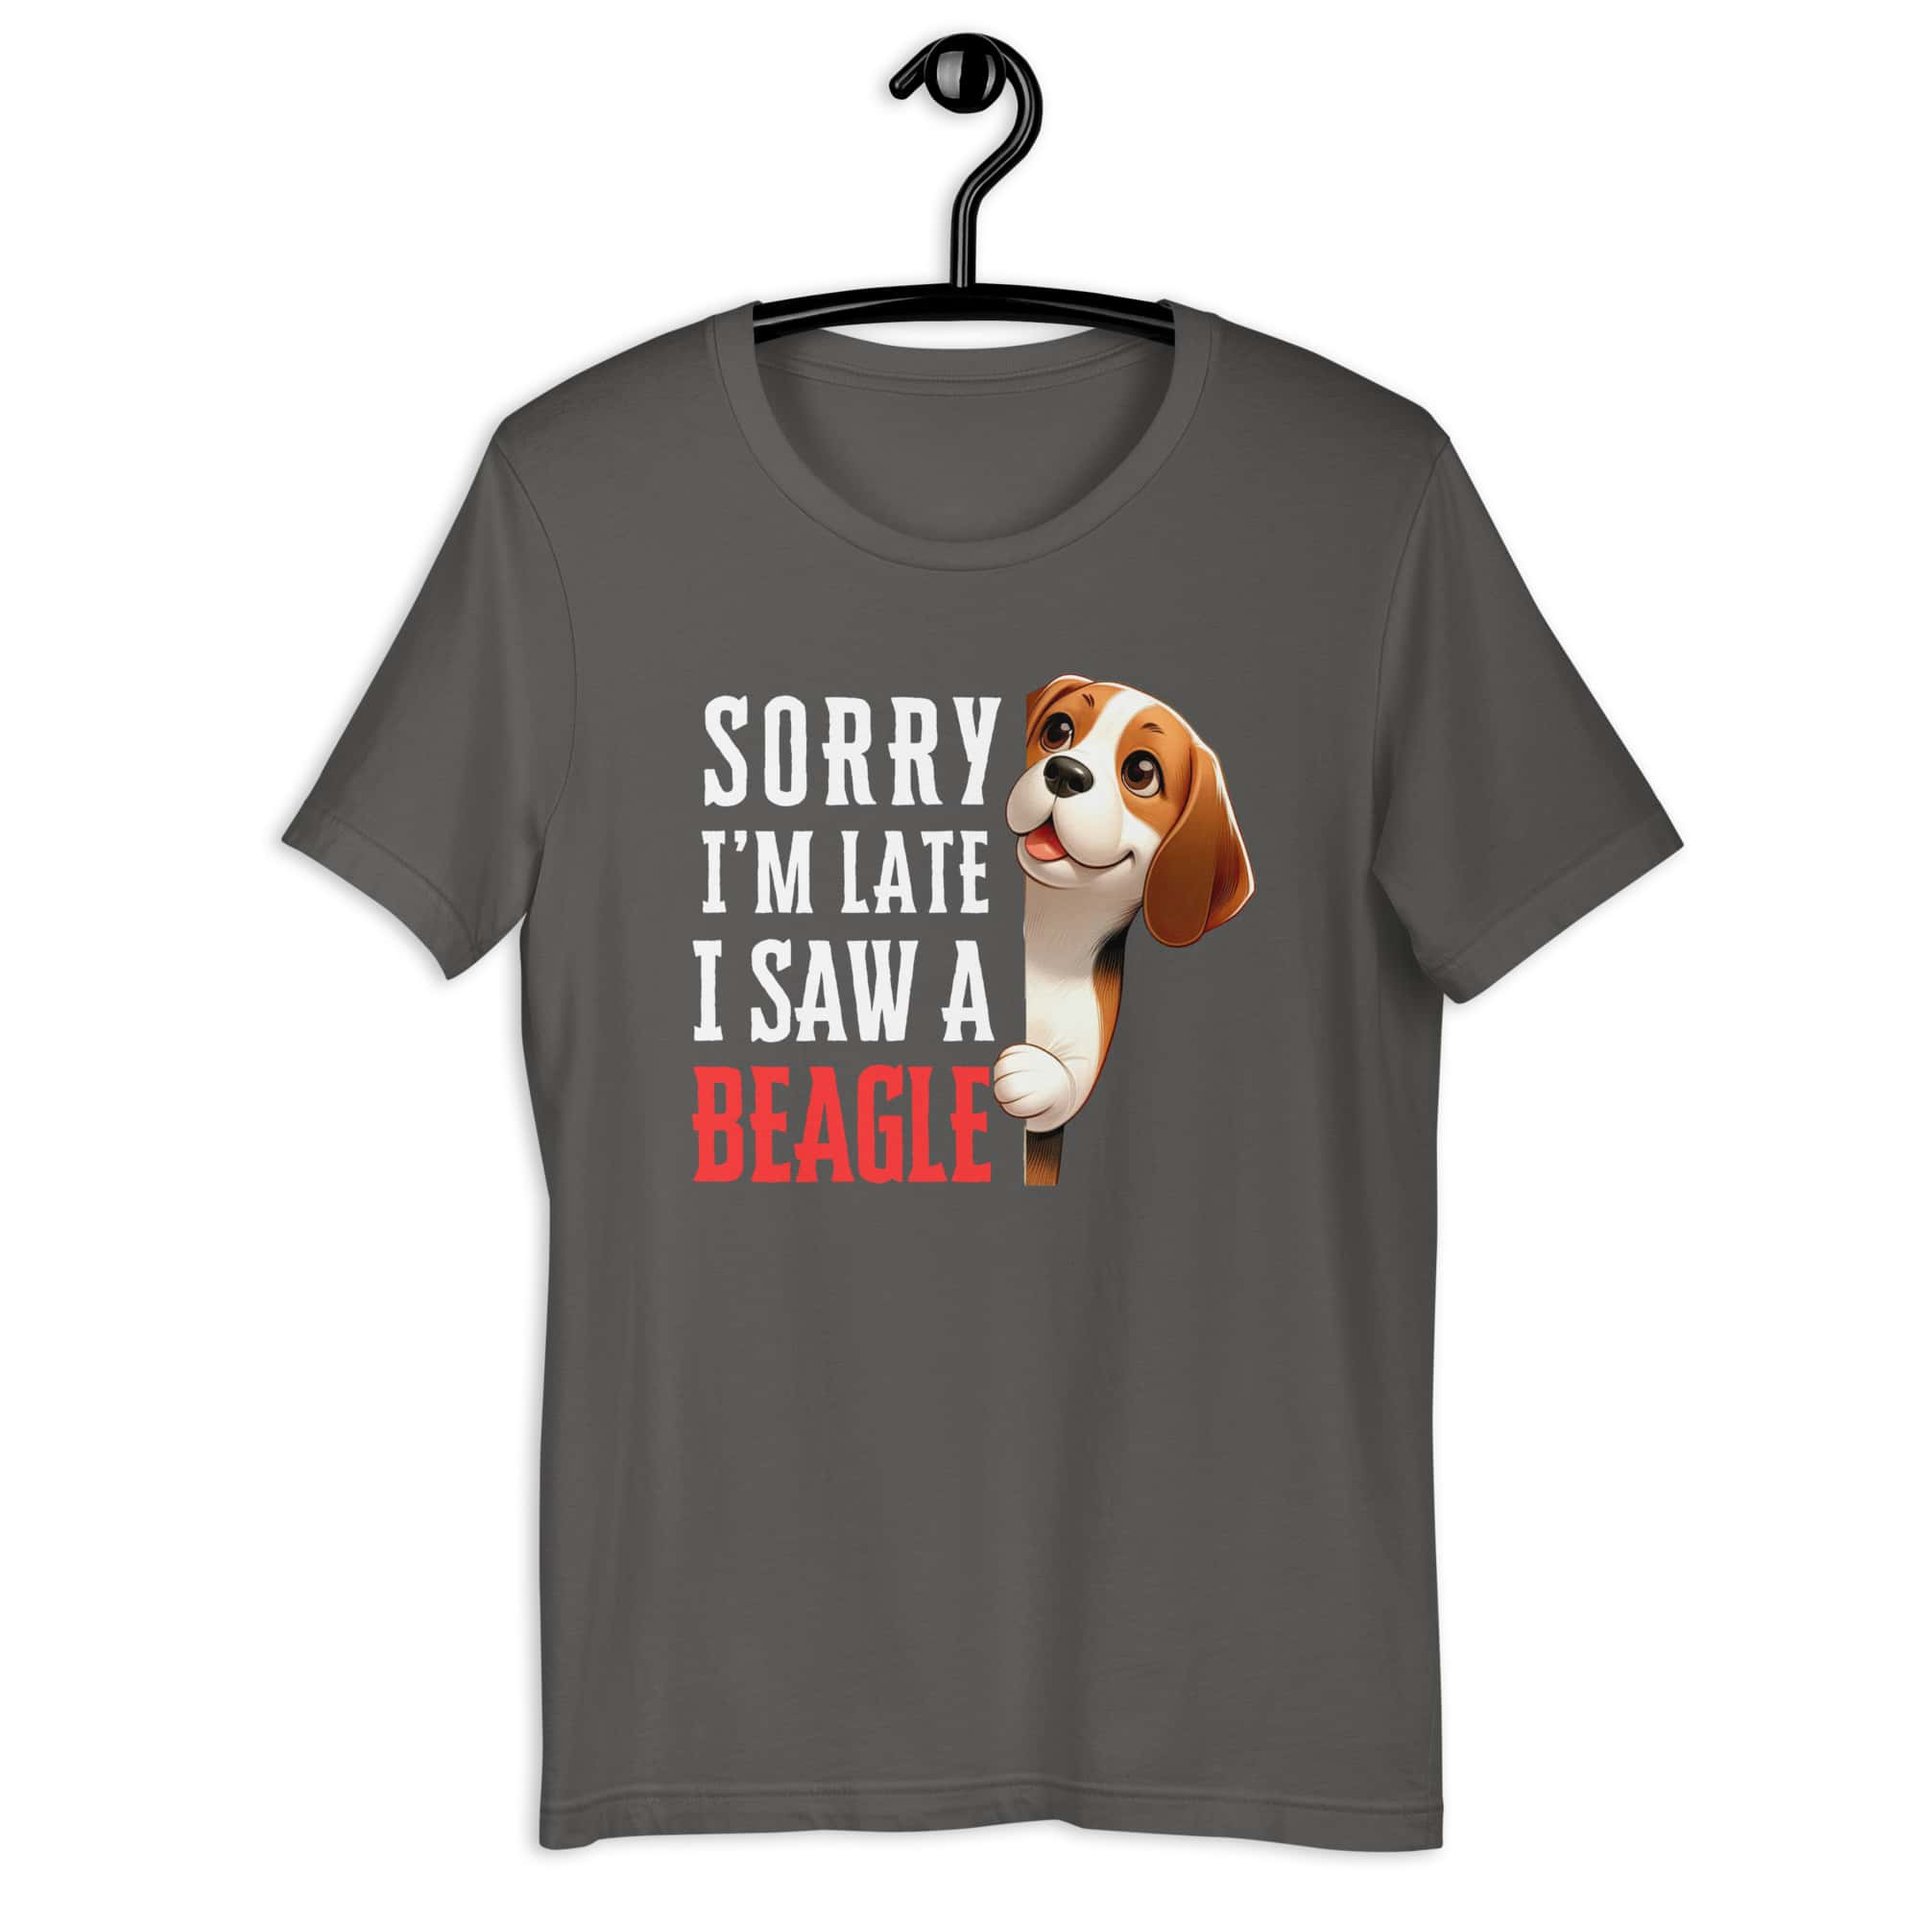 Sorry I’m Late I Saw A Beagle Unisex T-Shirt